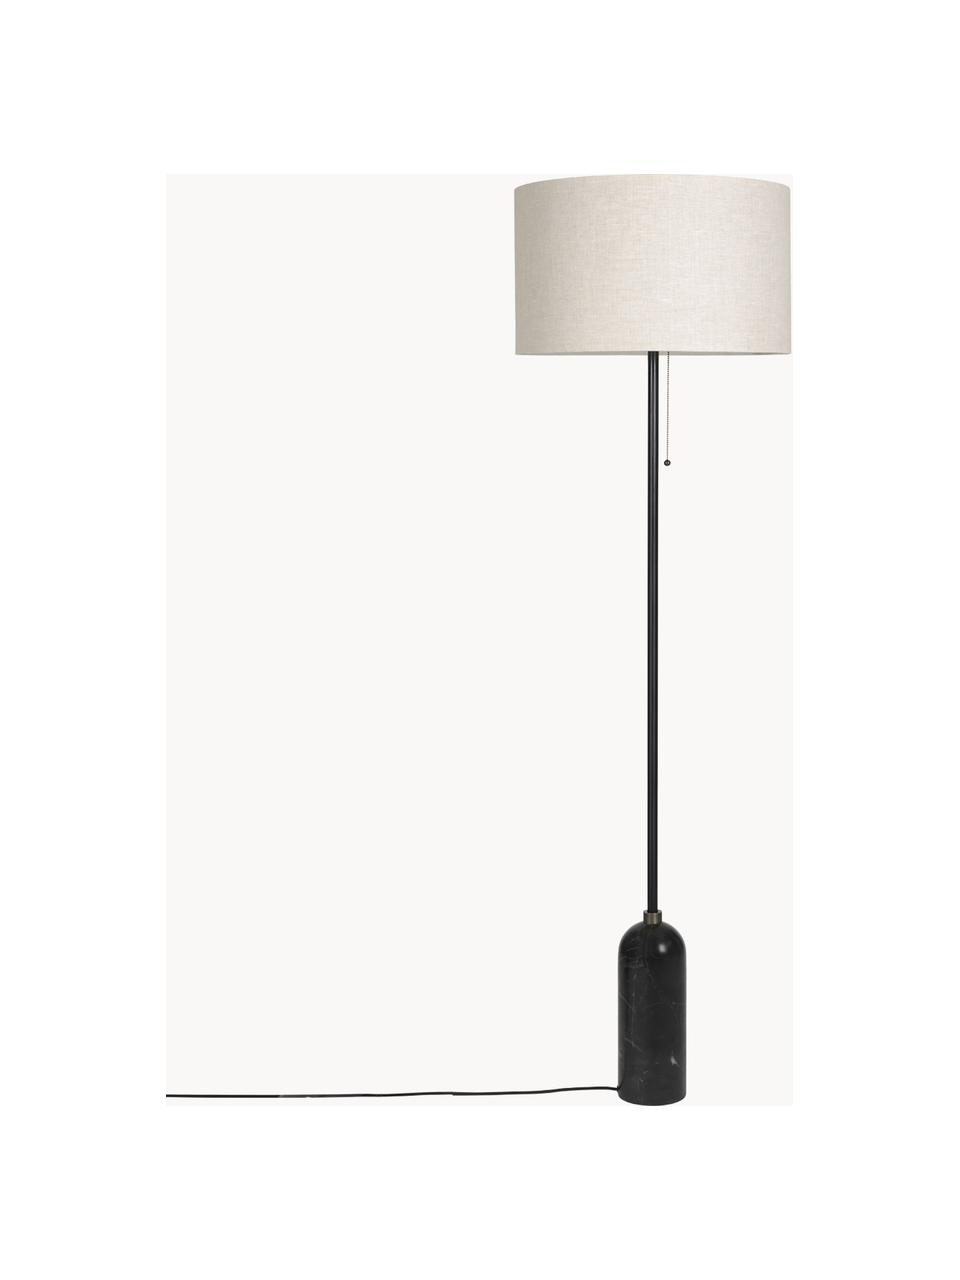 Lampadaire avec pied en marbre Gravity, intensité lumineuse variable, Beige clair, noir marbré, haut. 169 cm